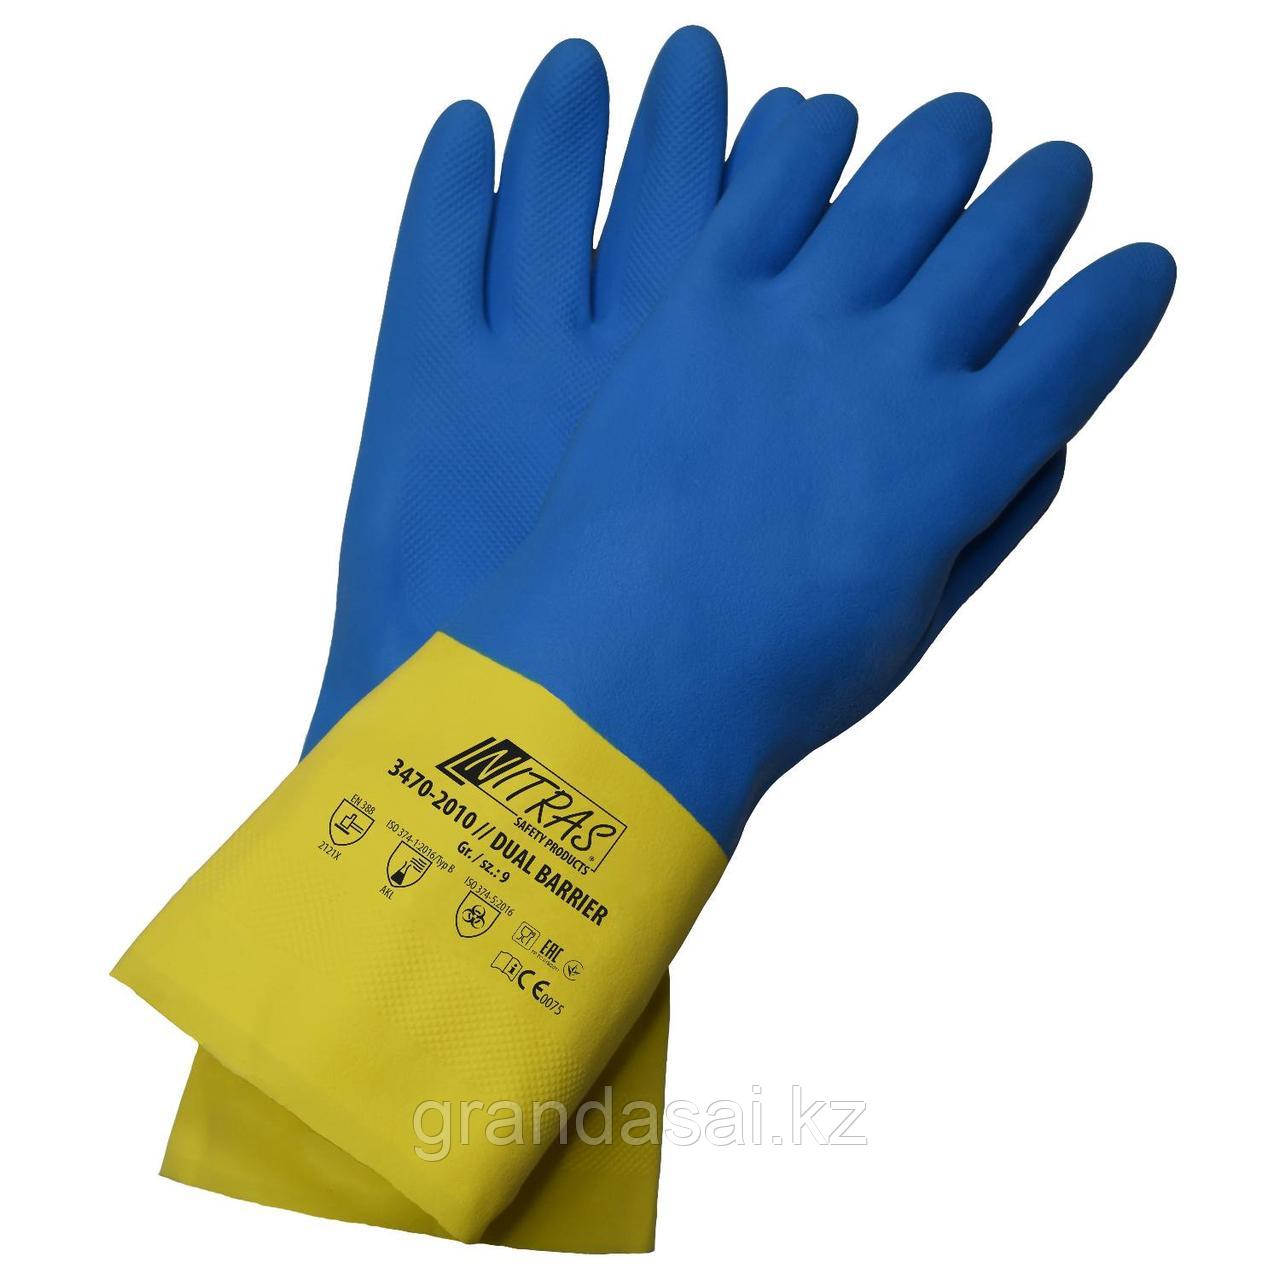 NITRAS 3470, перчатки для химической защиты, латексные, желтые, хлоропреновые, синие, длина 30 см